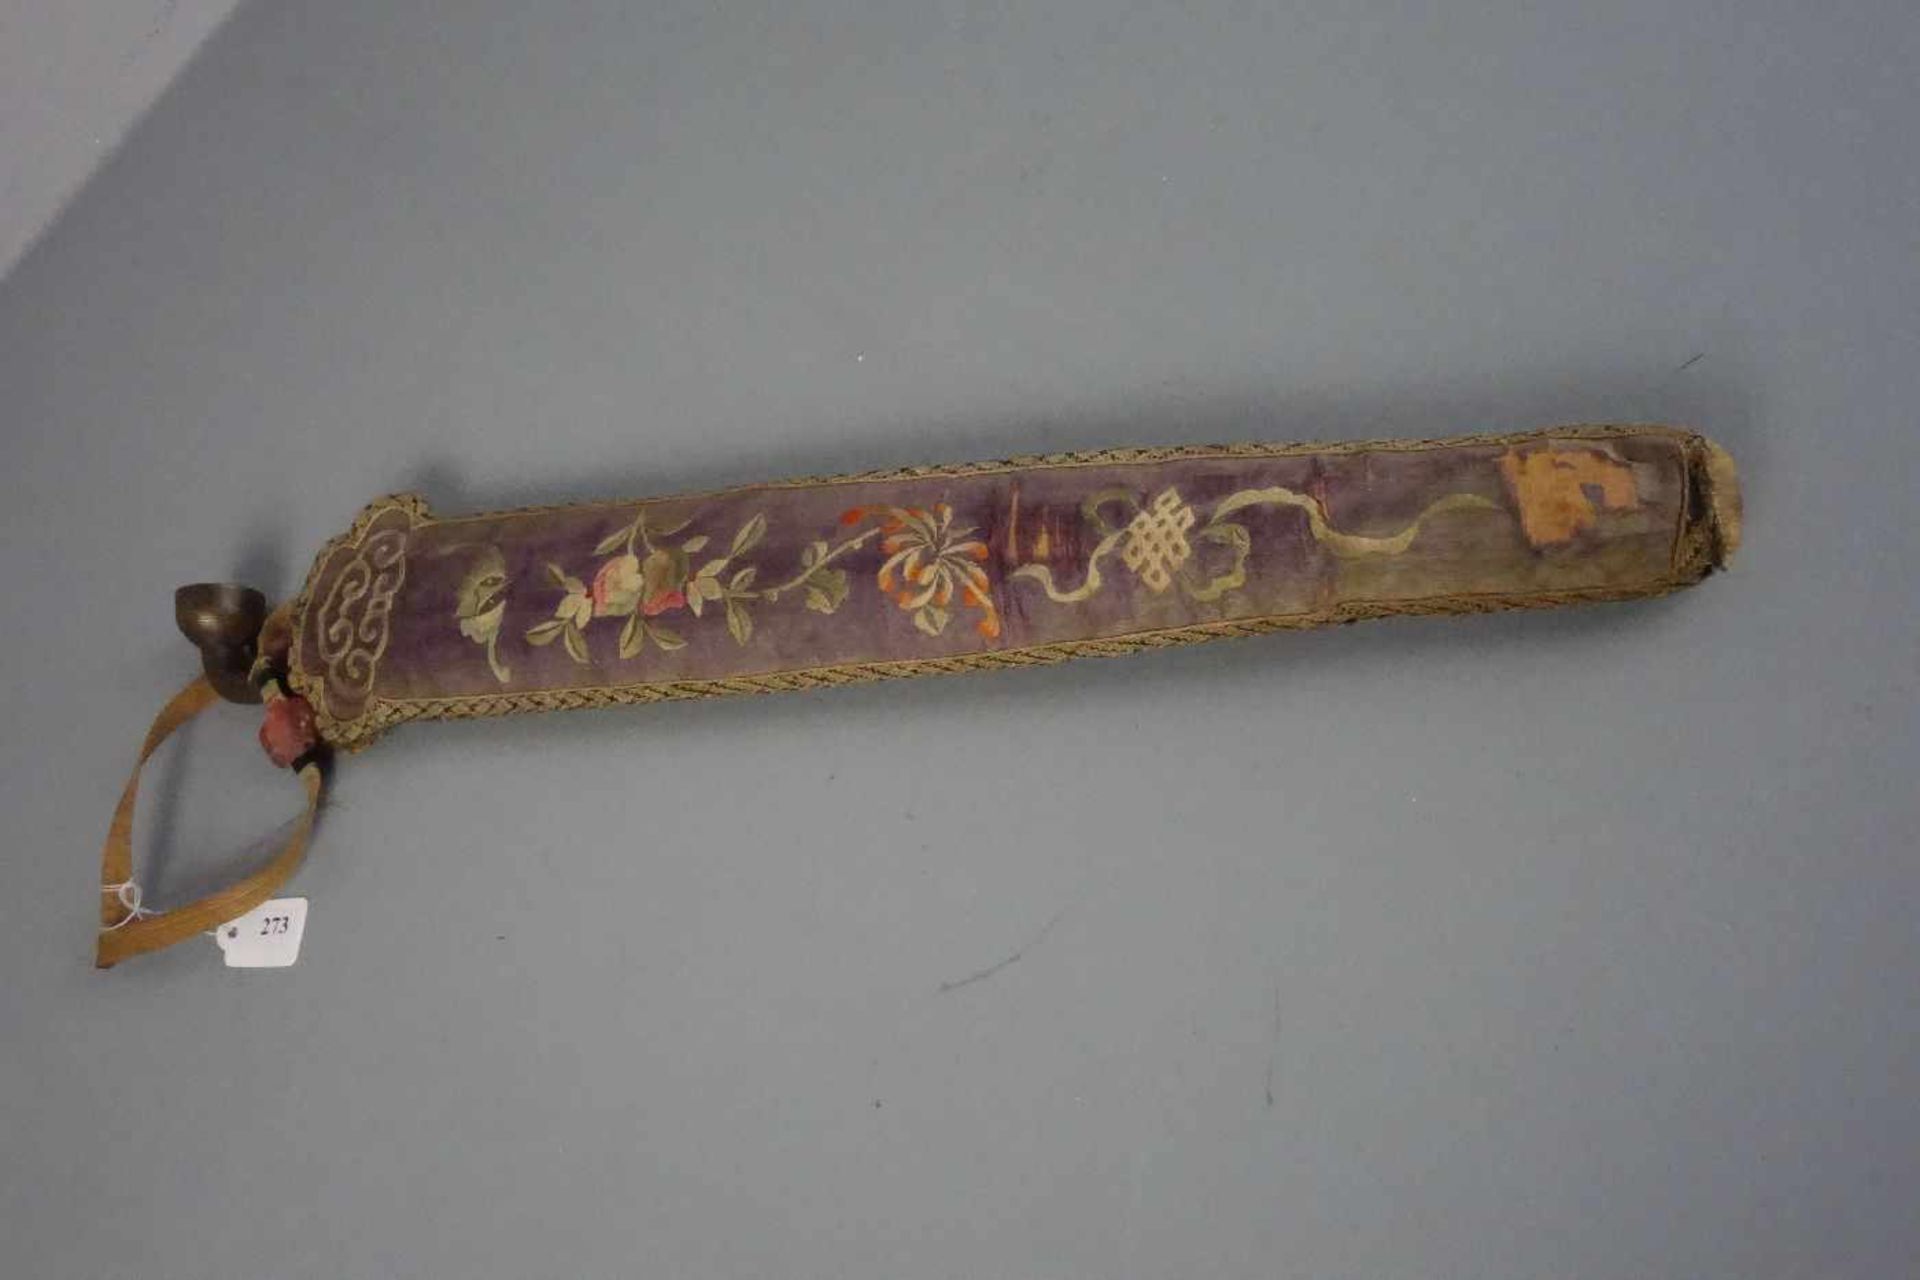 OPIUMPFEIFE MIT FUTTERAL / TRAGEVORRICHTUNG, späte Qing - Dynasie, Ende 19. Jh., Bronze, dekoriert - Image 3 of 3